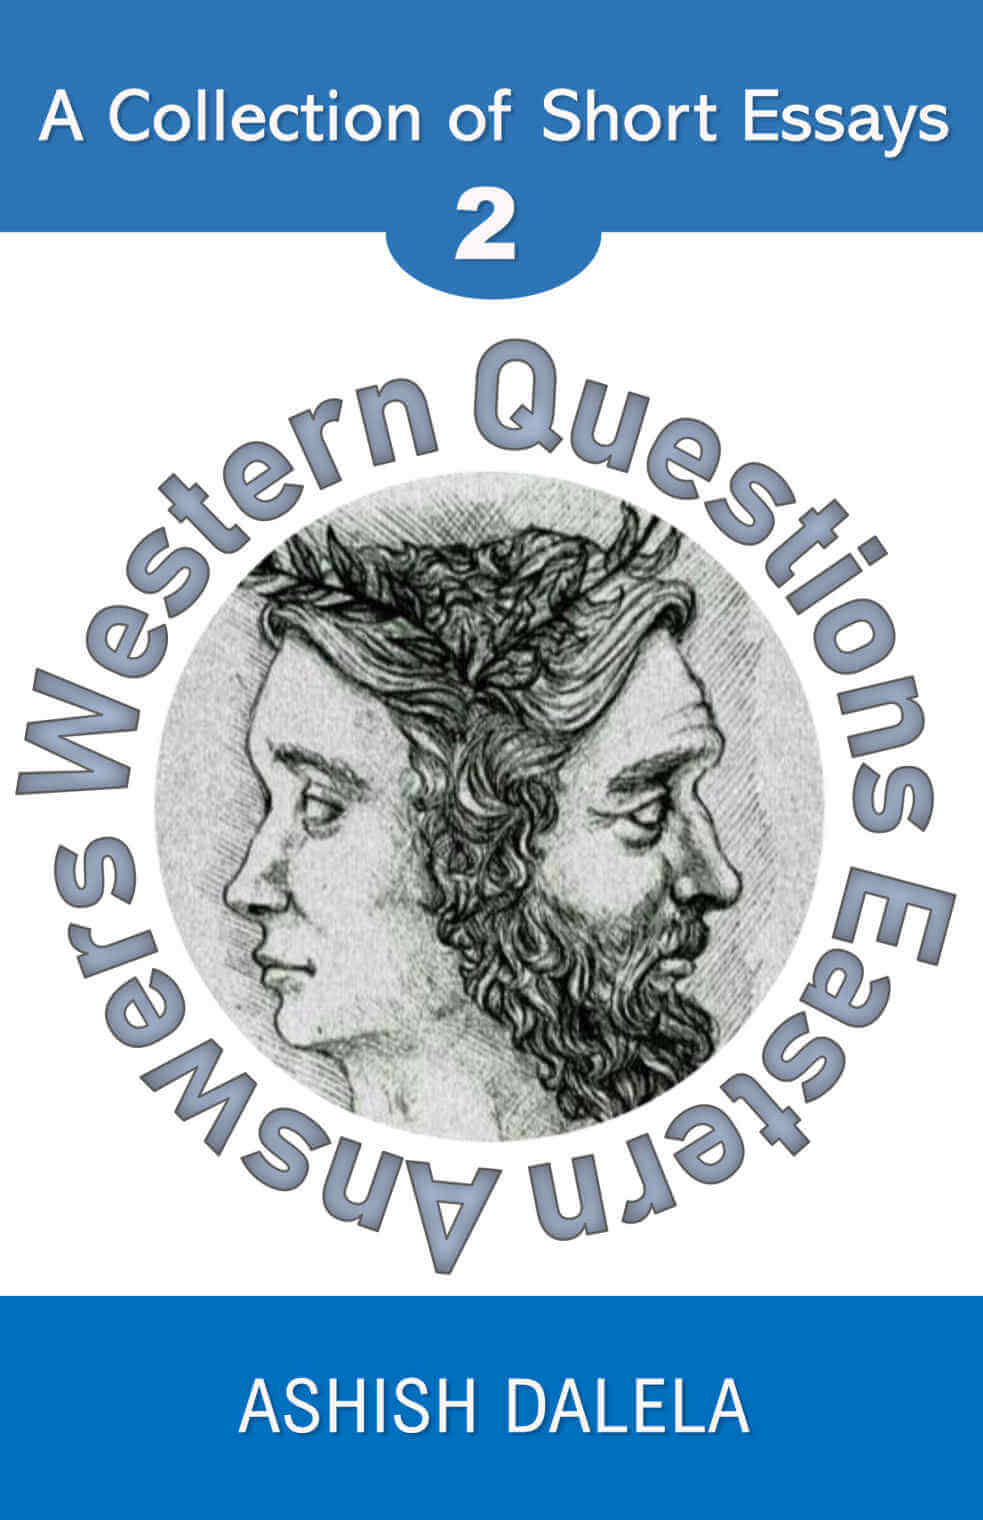 Domande occidentali Risposte orientali: una raccolta di saggi brevi - Volume 2